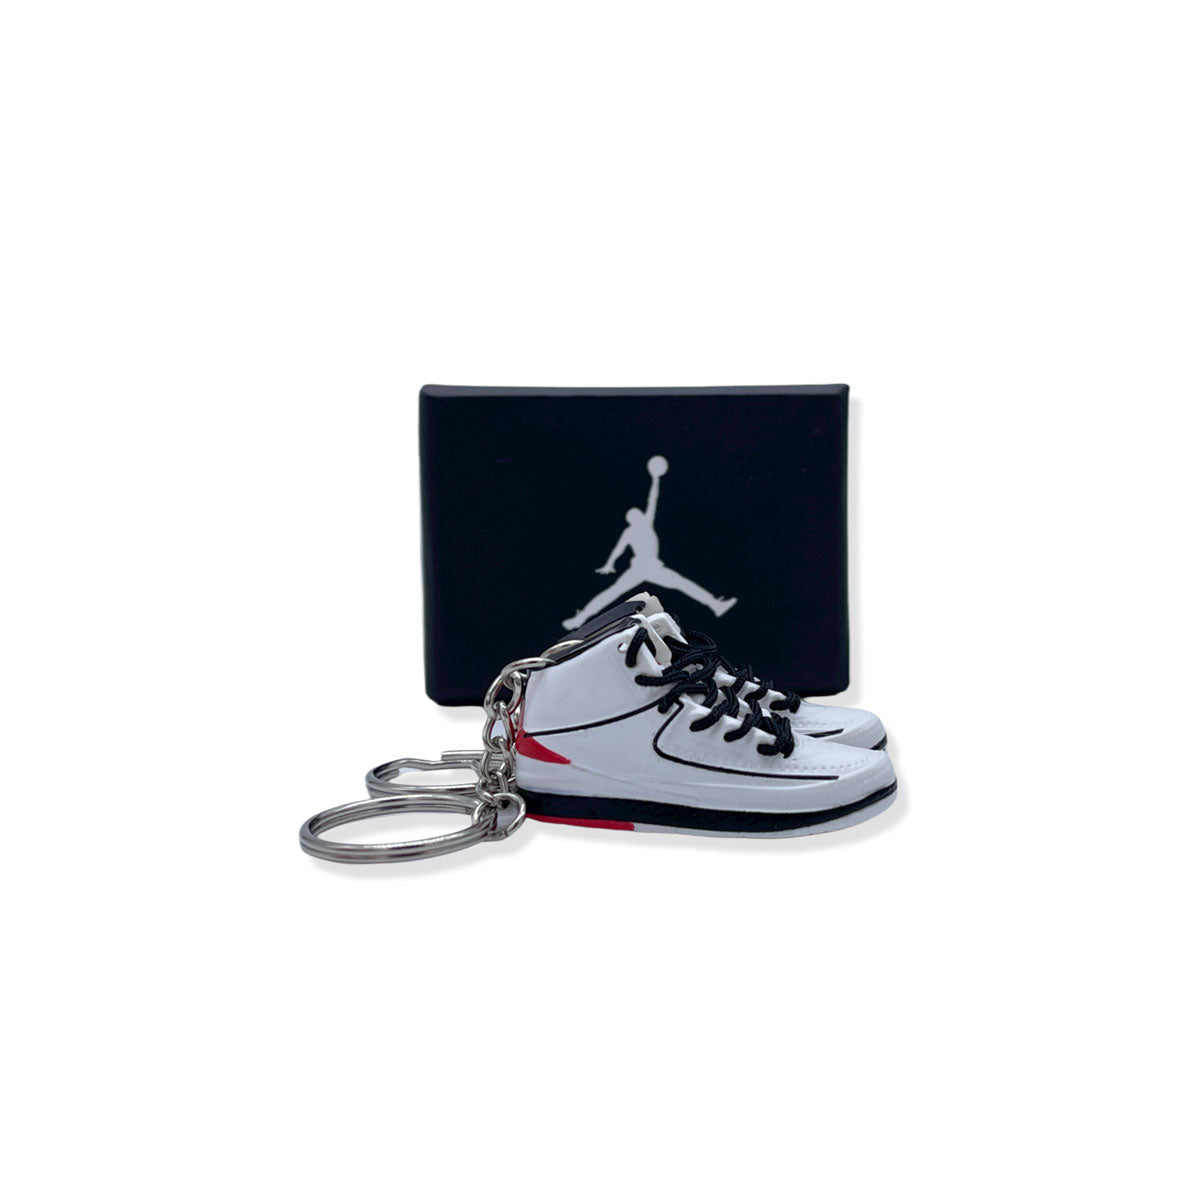 3D Sneaker Keychain- Air Jordan 2 Varsity Red Pair